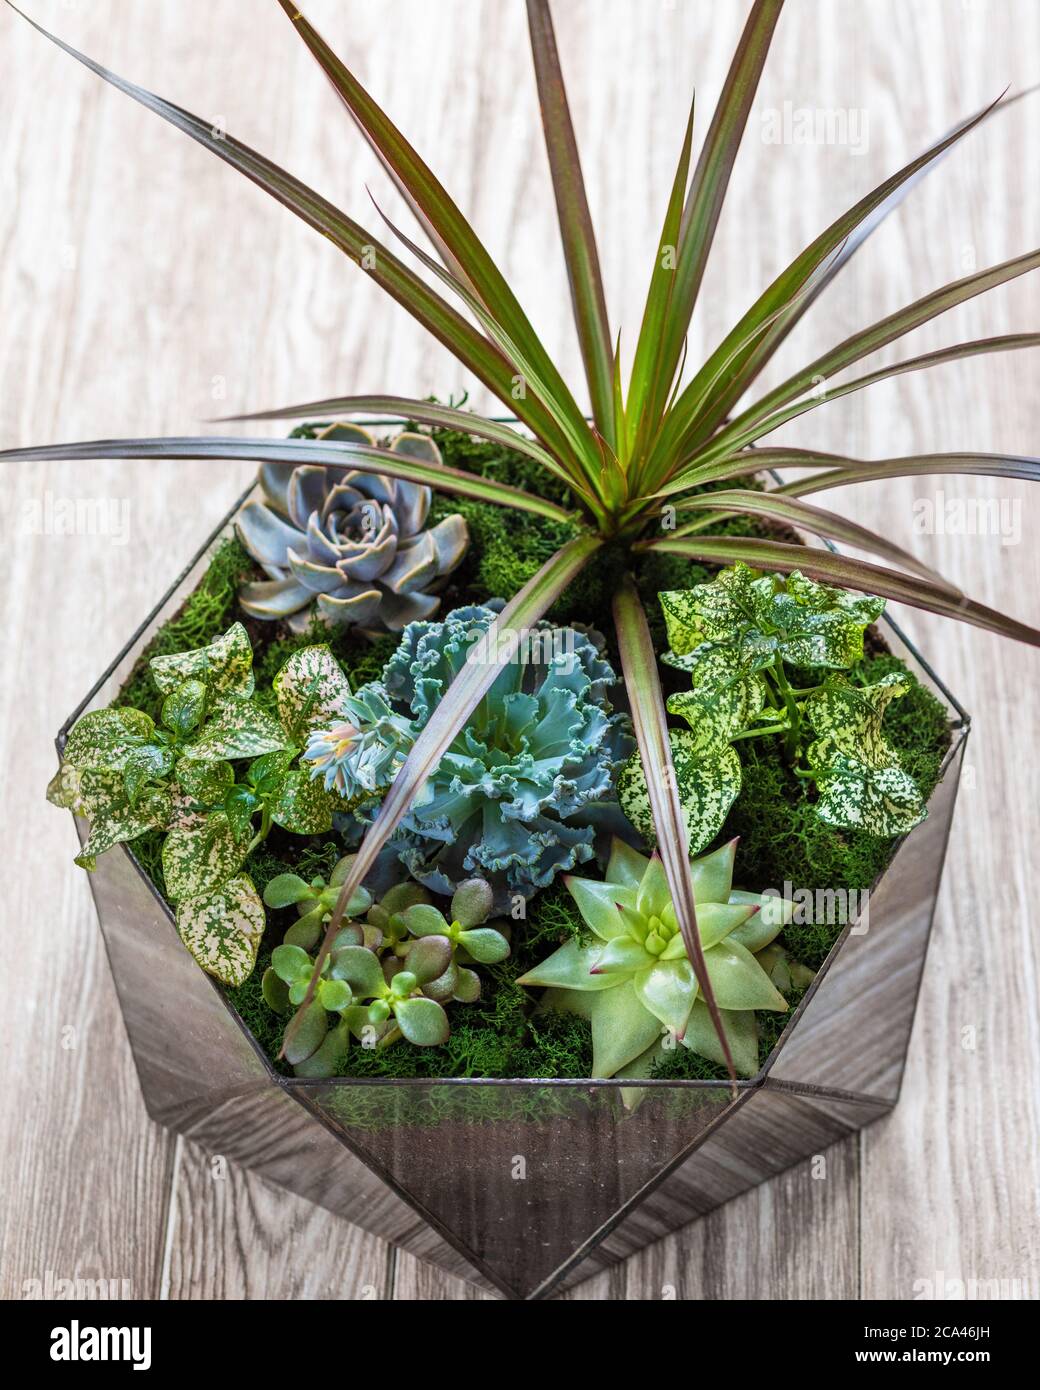 Schönes Terrarium mit Sukkulenten, Kakteen, Blumen, Felsen, Sand im Glas  Stockfotografie - Alamy